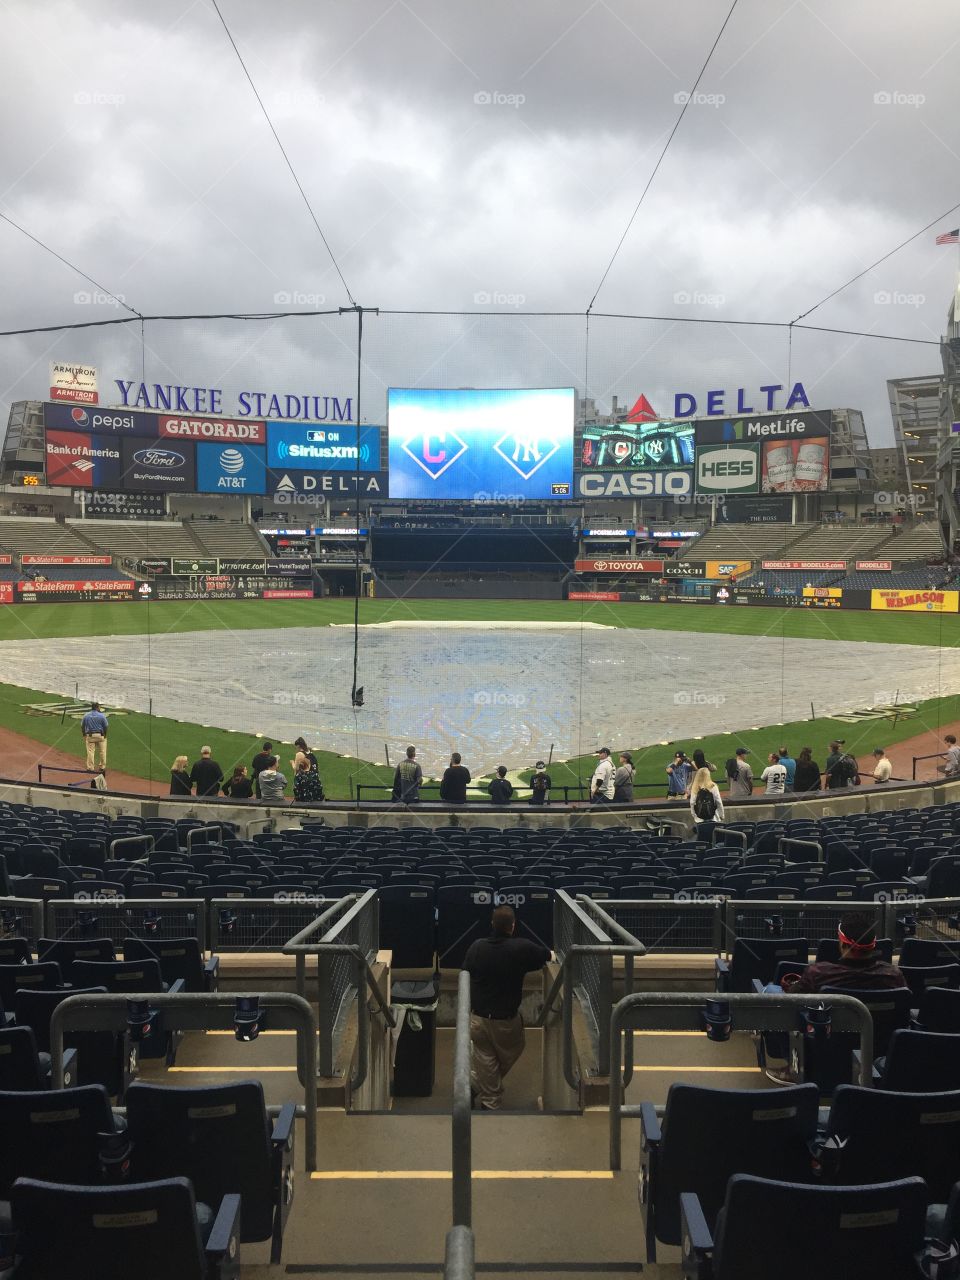 Yankee Stadium overcast 